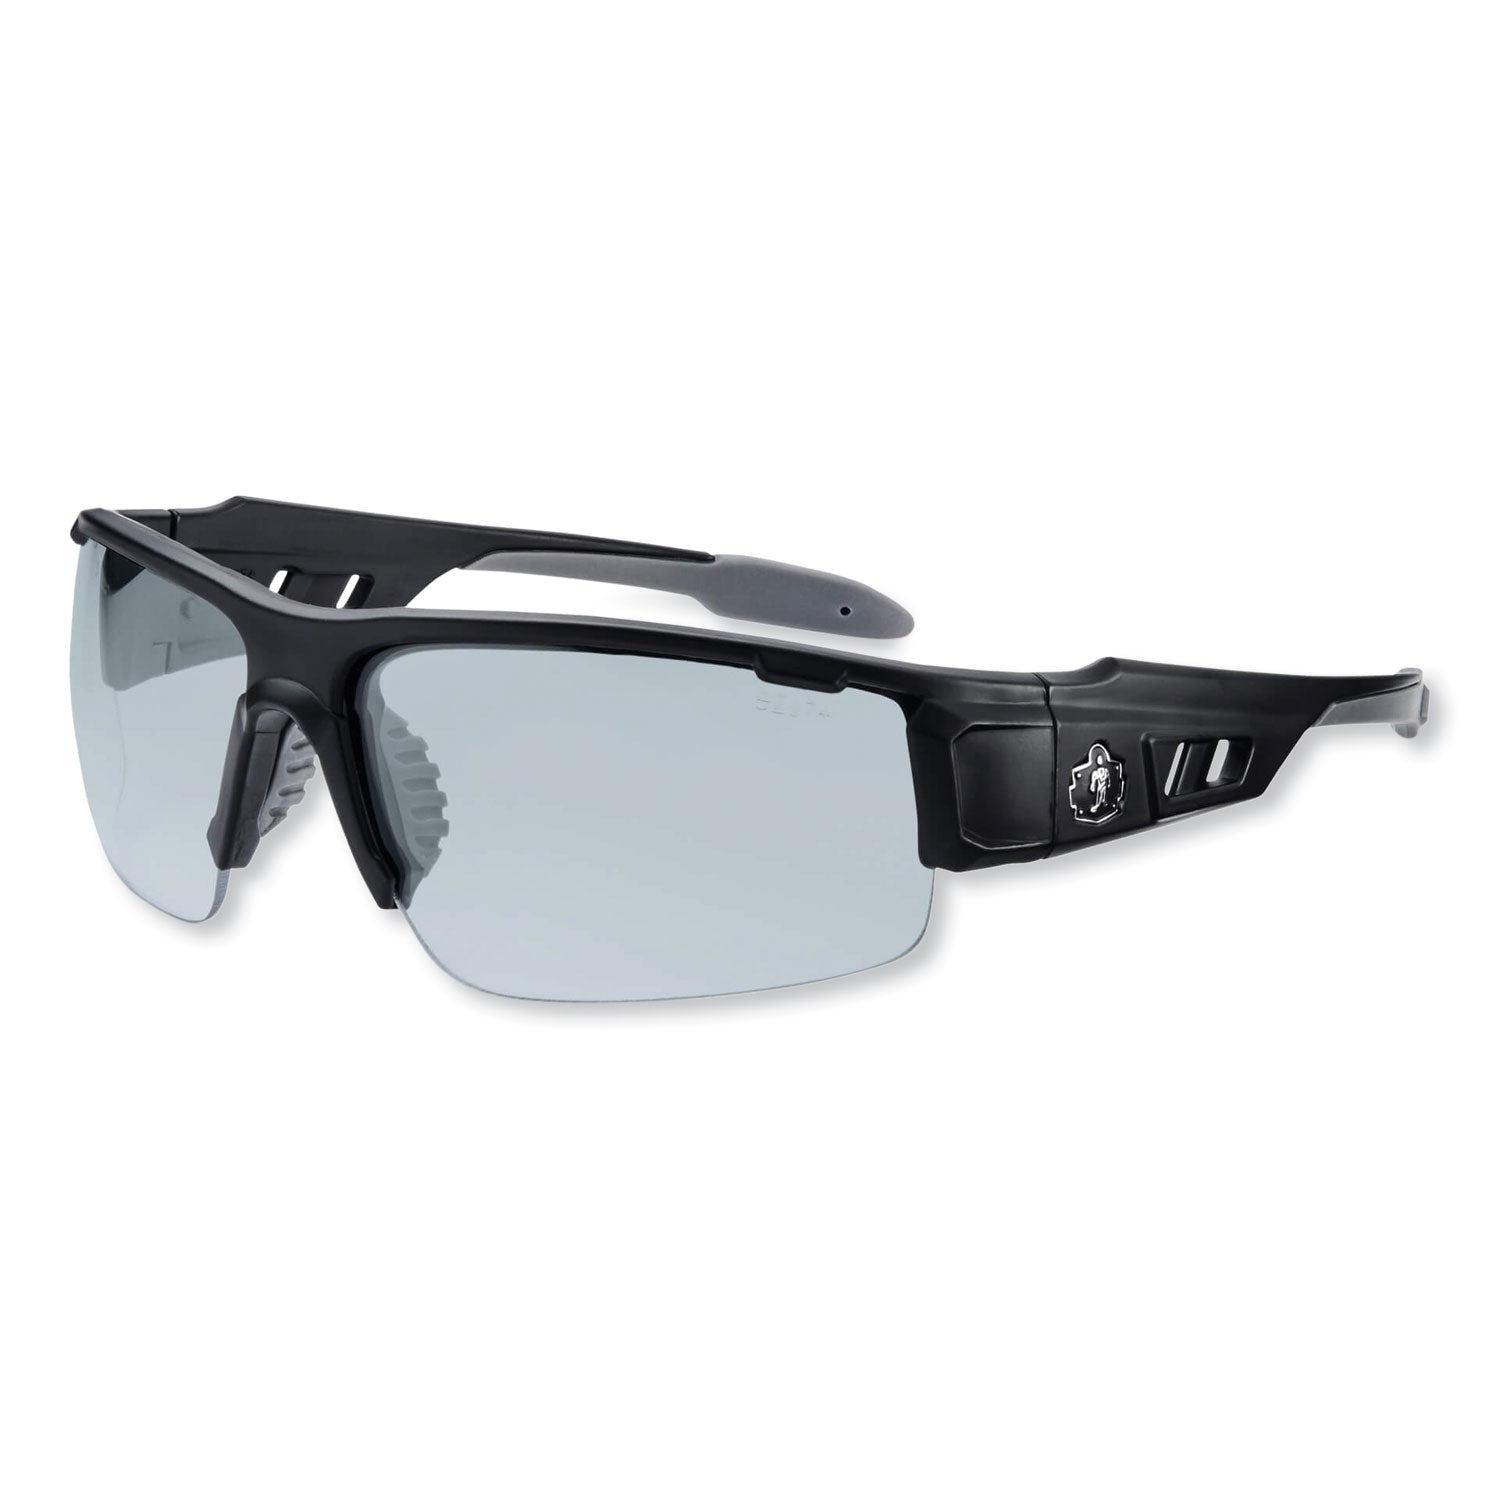 skullerz-dagr-safety-glasses-matte-black-nylon-impact-frame-indoor-outdoor-polycarbonate-lens-ships-in-1-3-business-days_ego52480 - 1